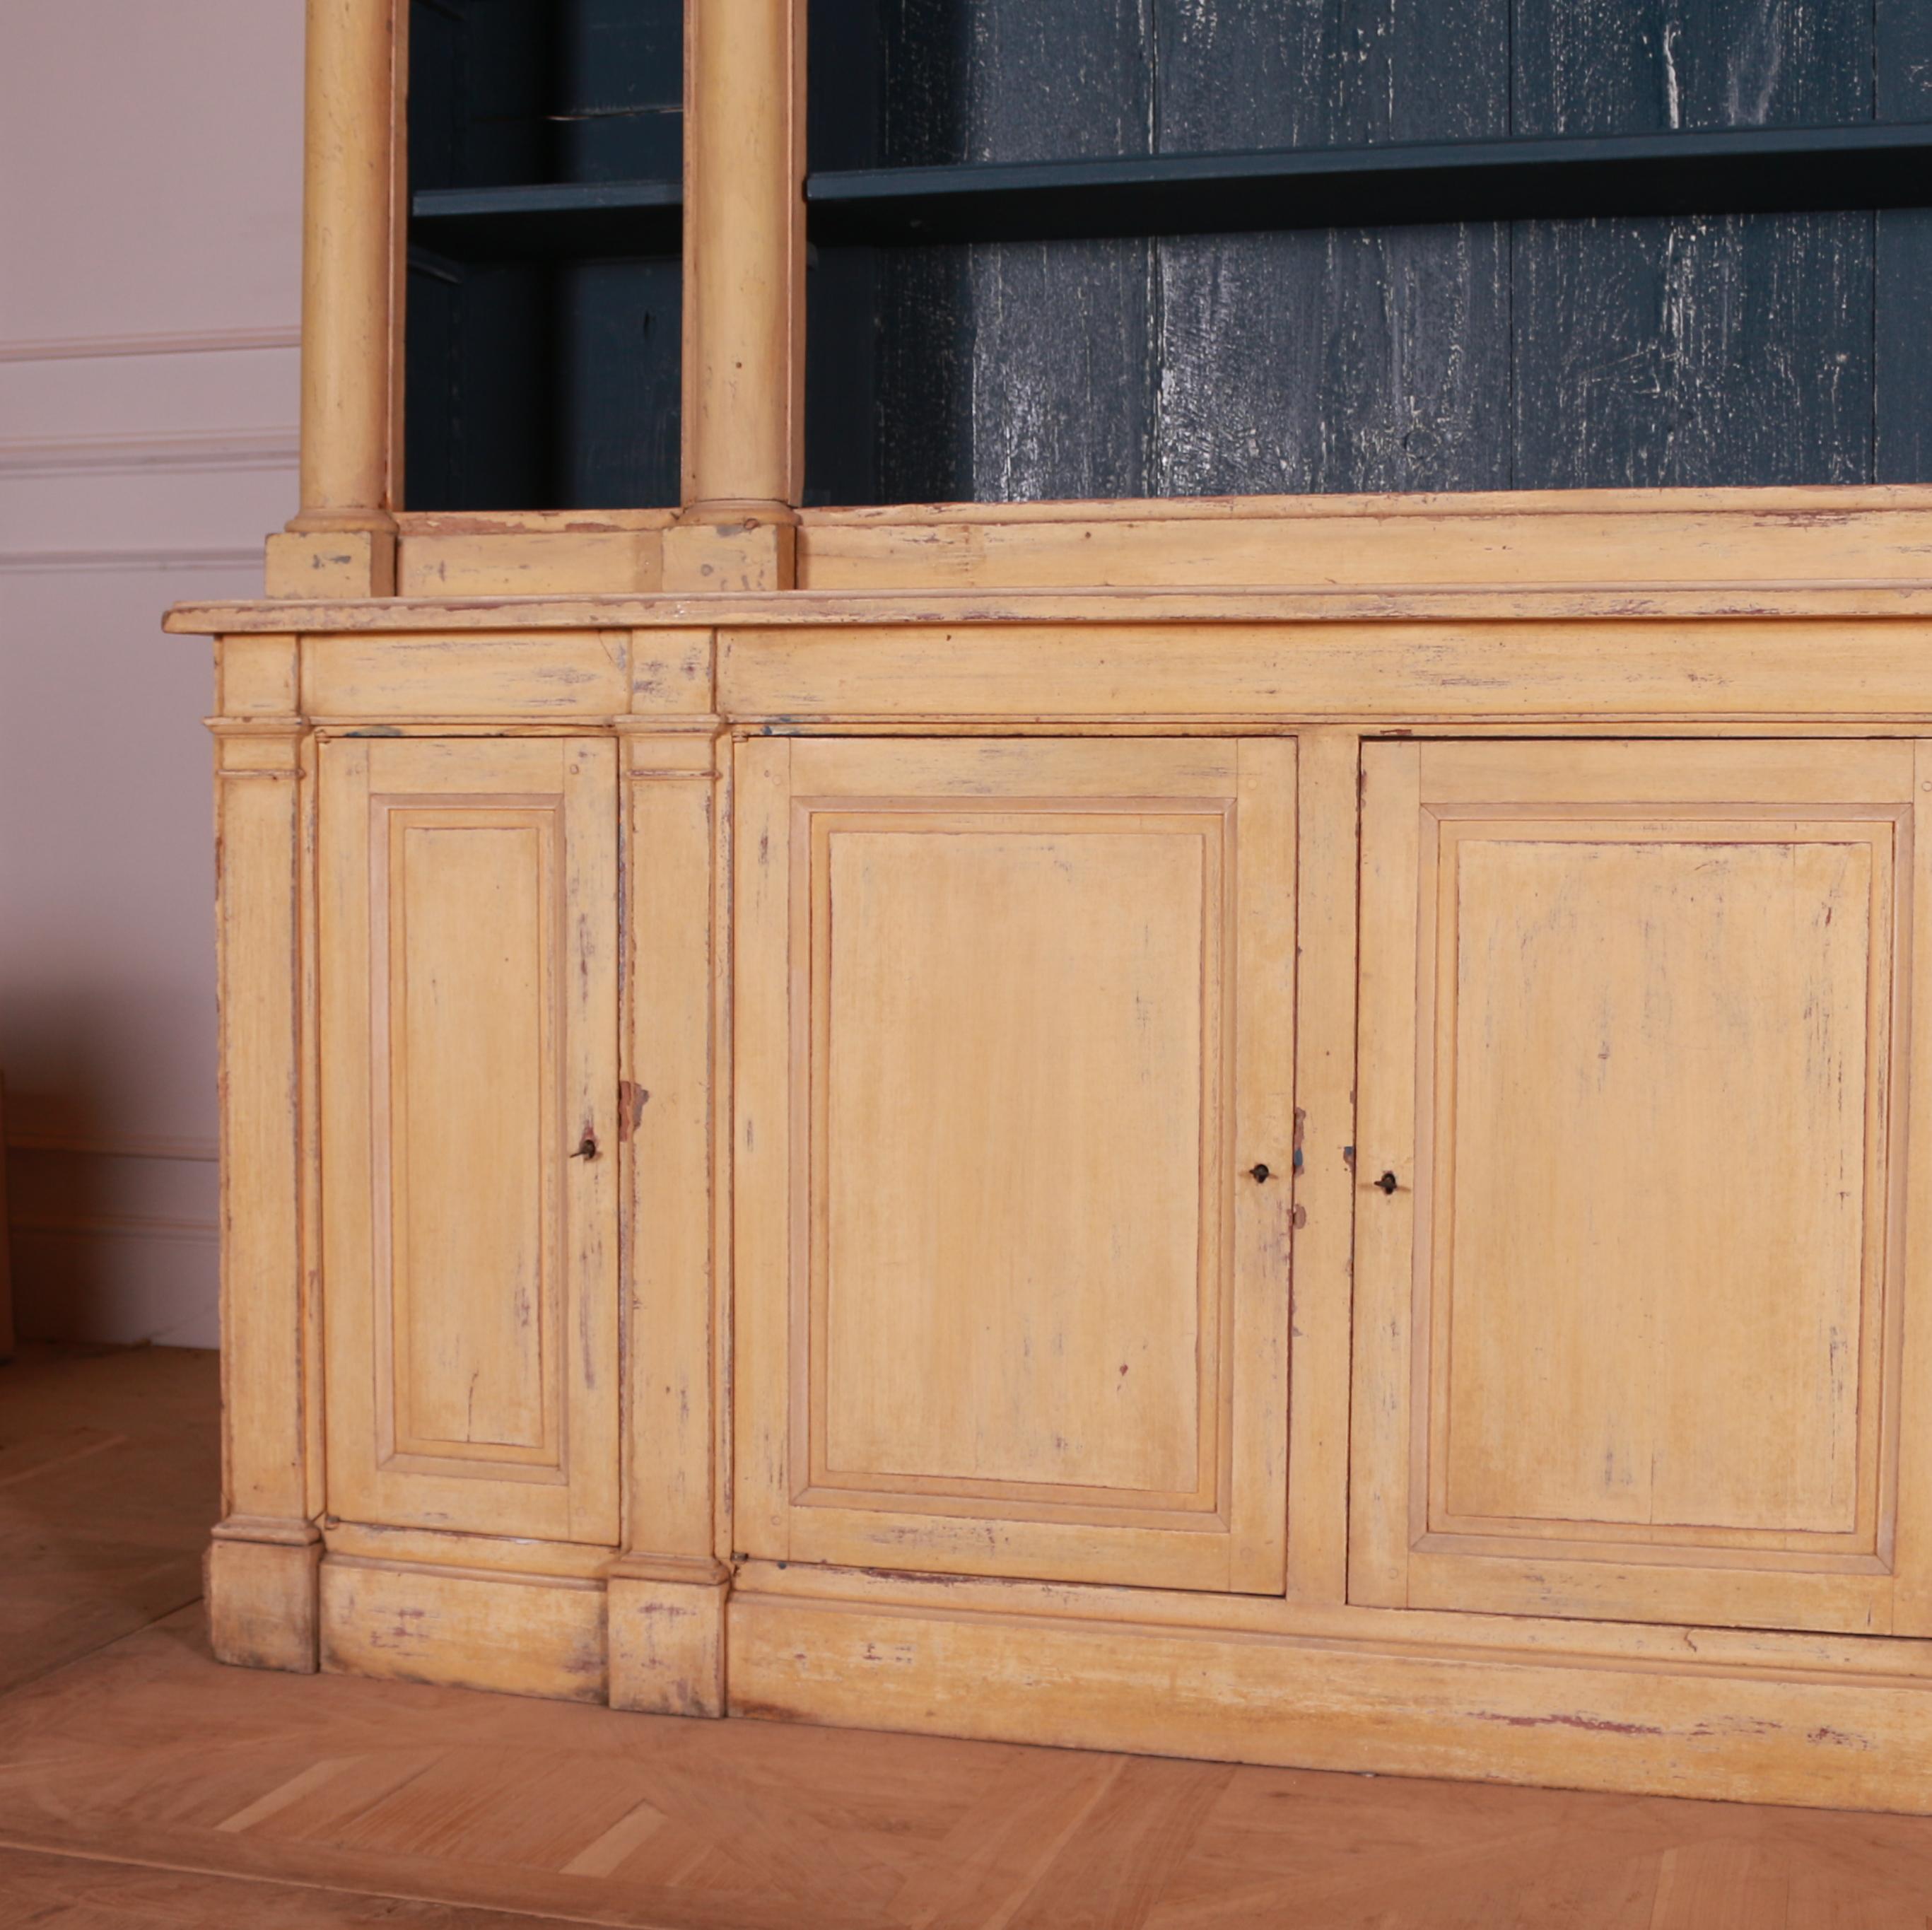 Wunderschönes original bemaltes französisches Bücherregal aus dem frühen 19. Der Innenraum wurde später lackiert. Der obere Teil lässt sich für einen leichten Zugang zerlegen. 1810.

Die Regaltiefe beträgt 10